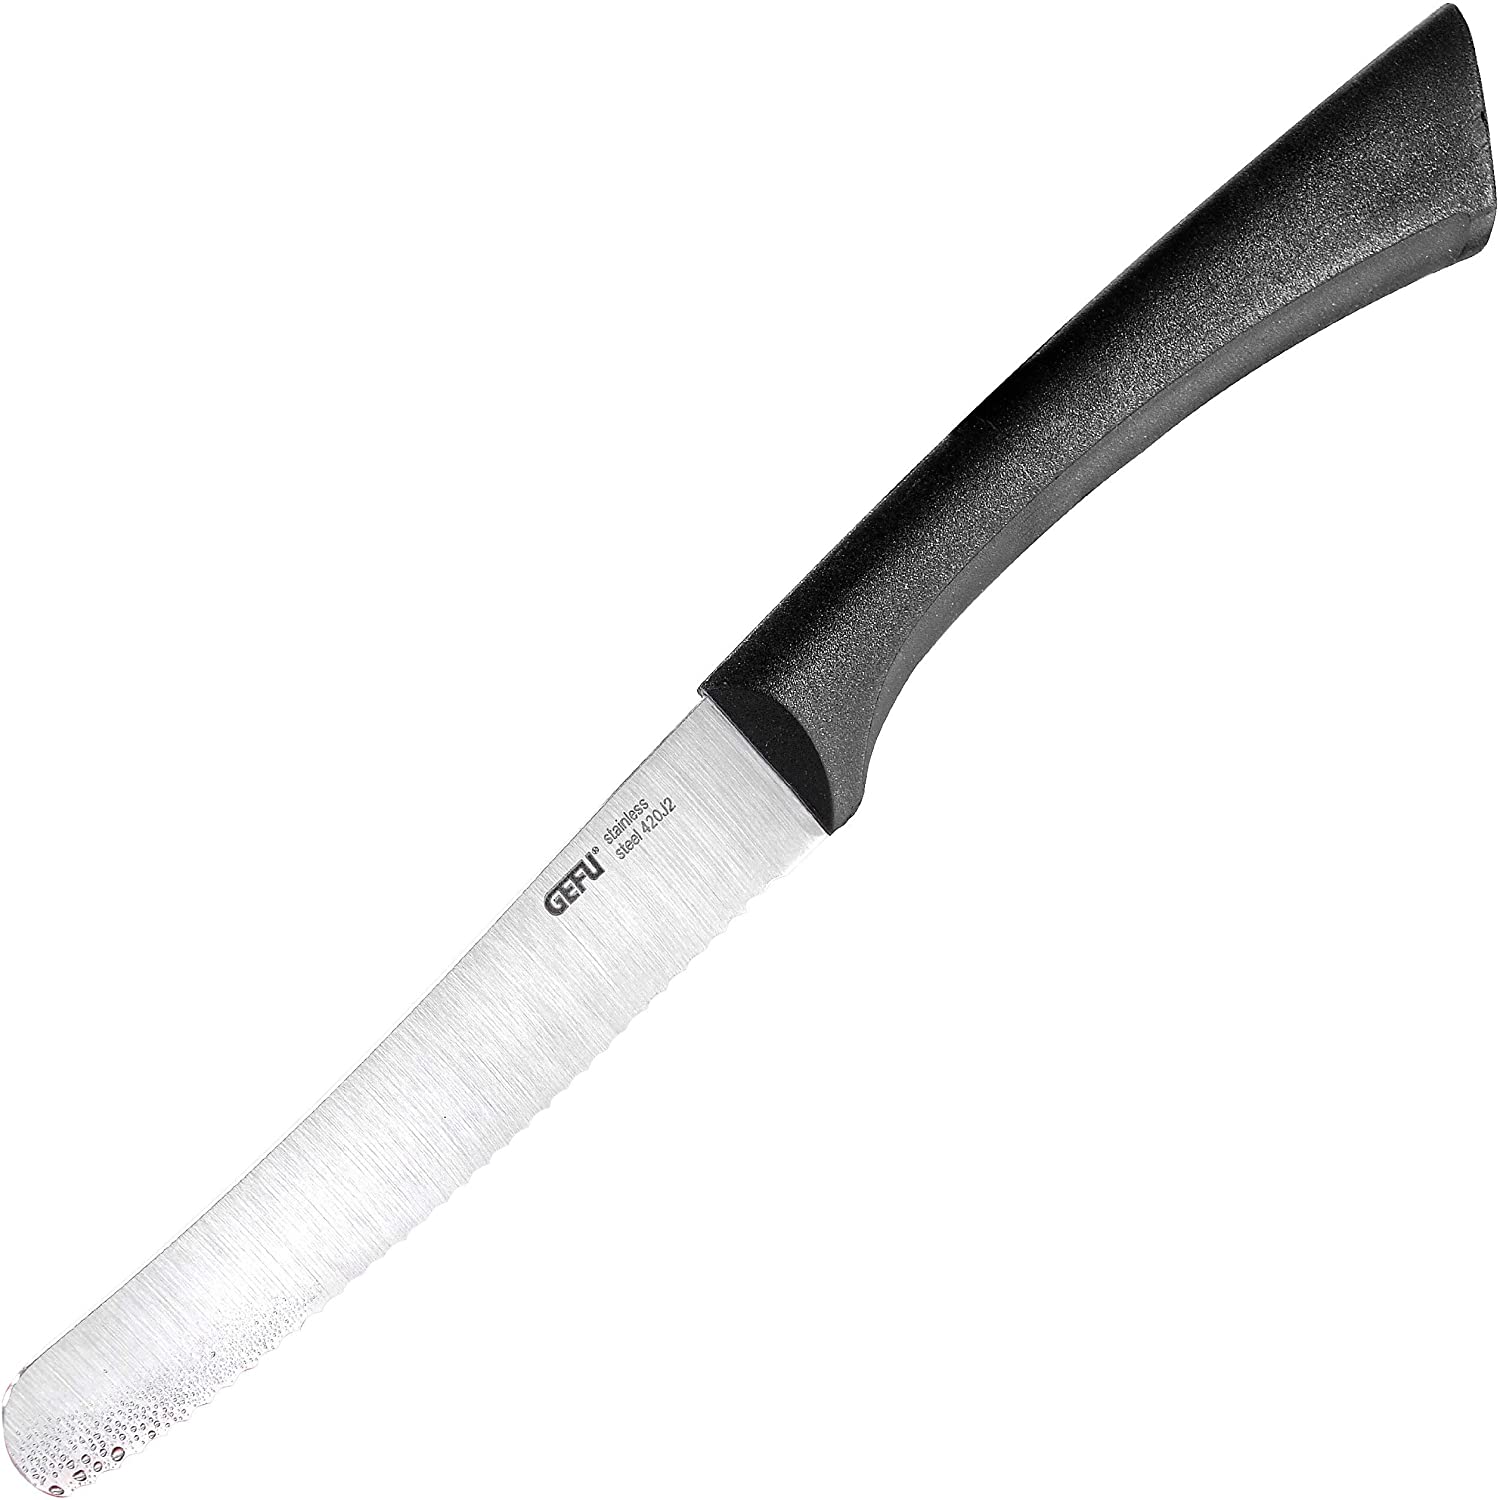 Gefu 13820 Utility Knife